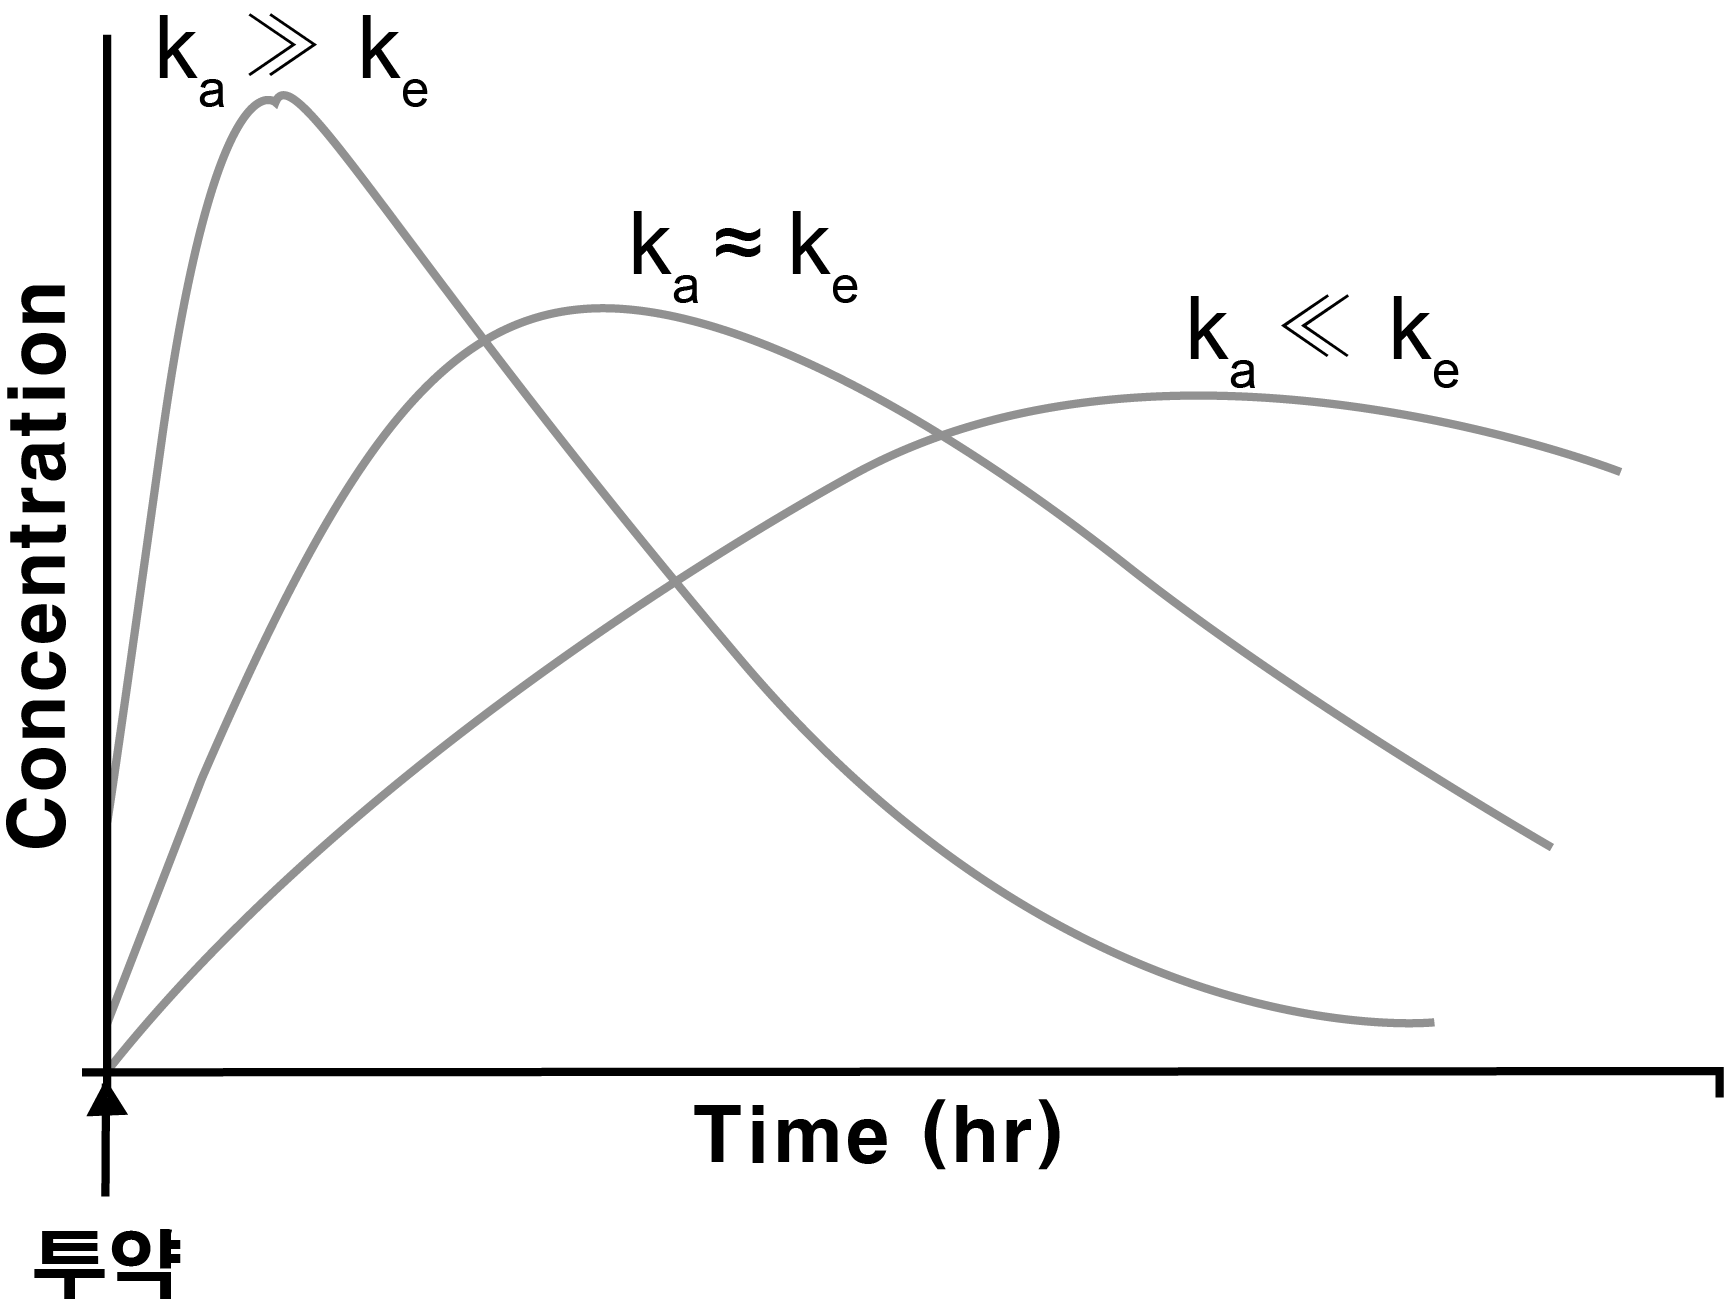 흡수속도상수(ka) 와 혈장약물농도 곡선의 관계 